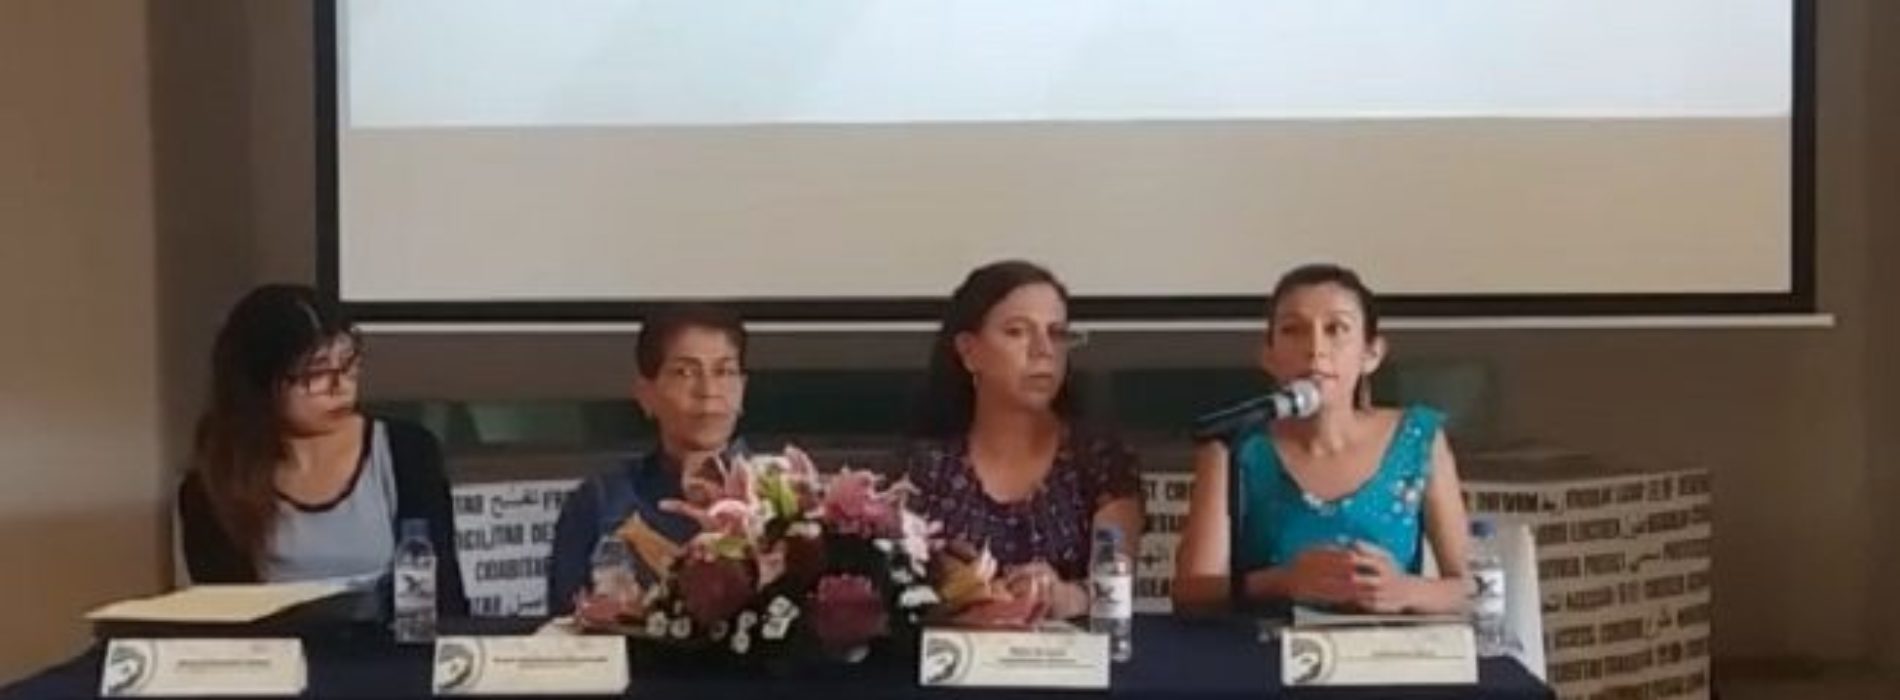 Desconocen en Oaxaca causales para acceder al aborto